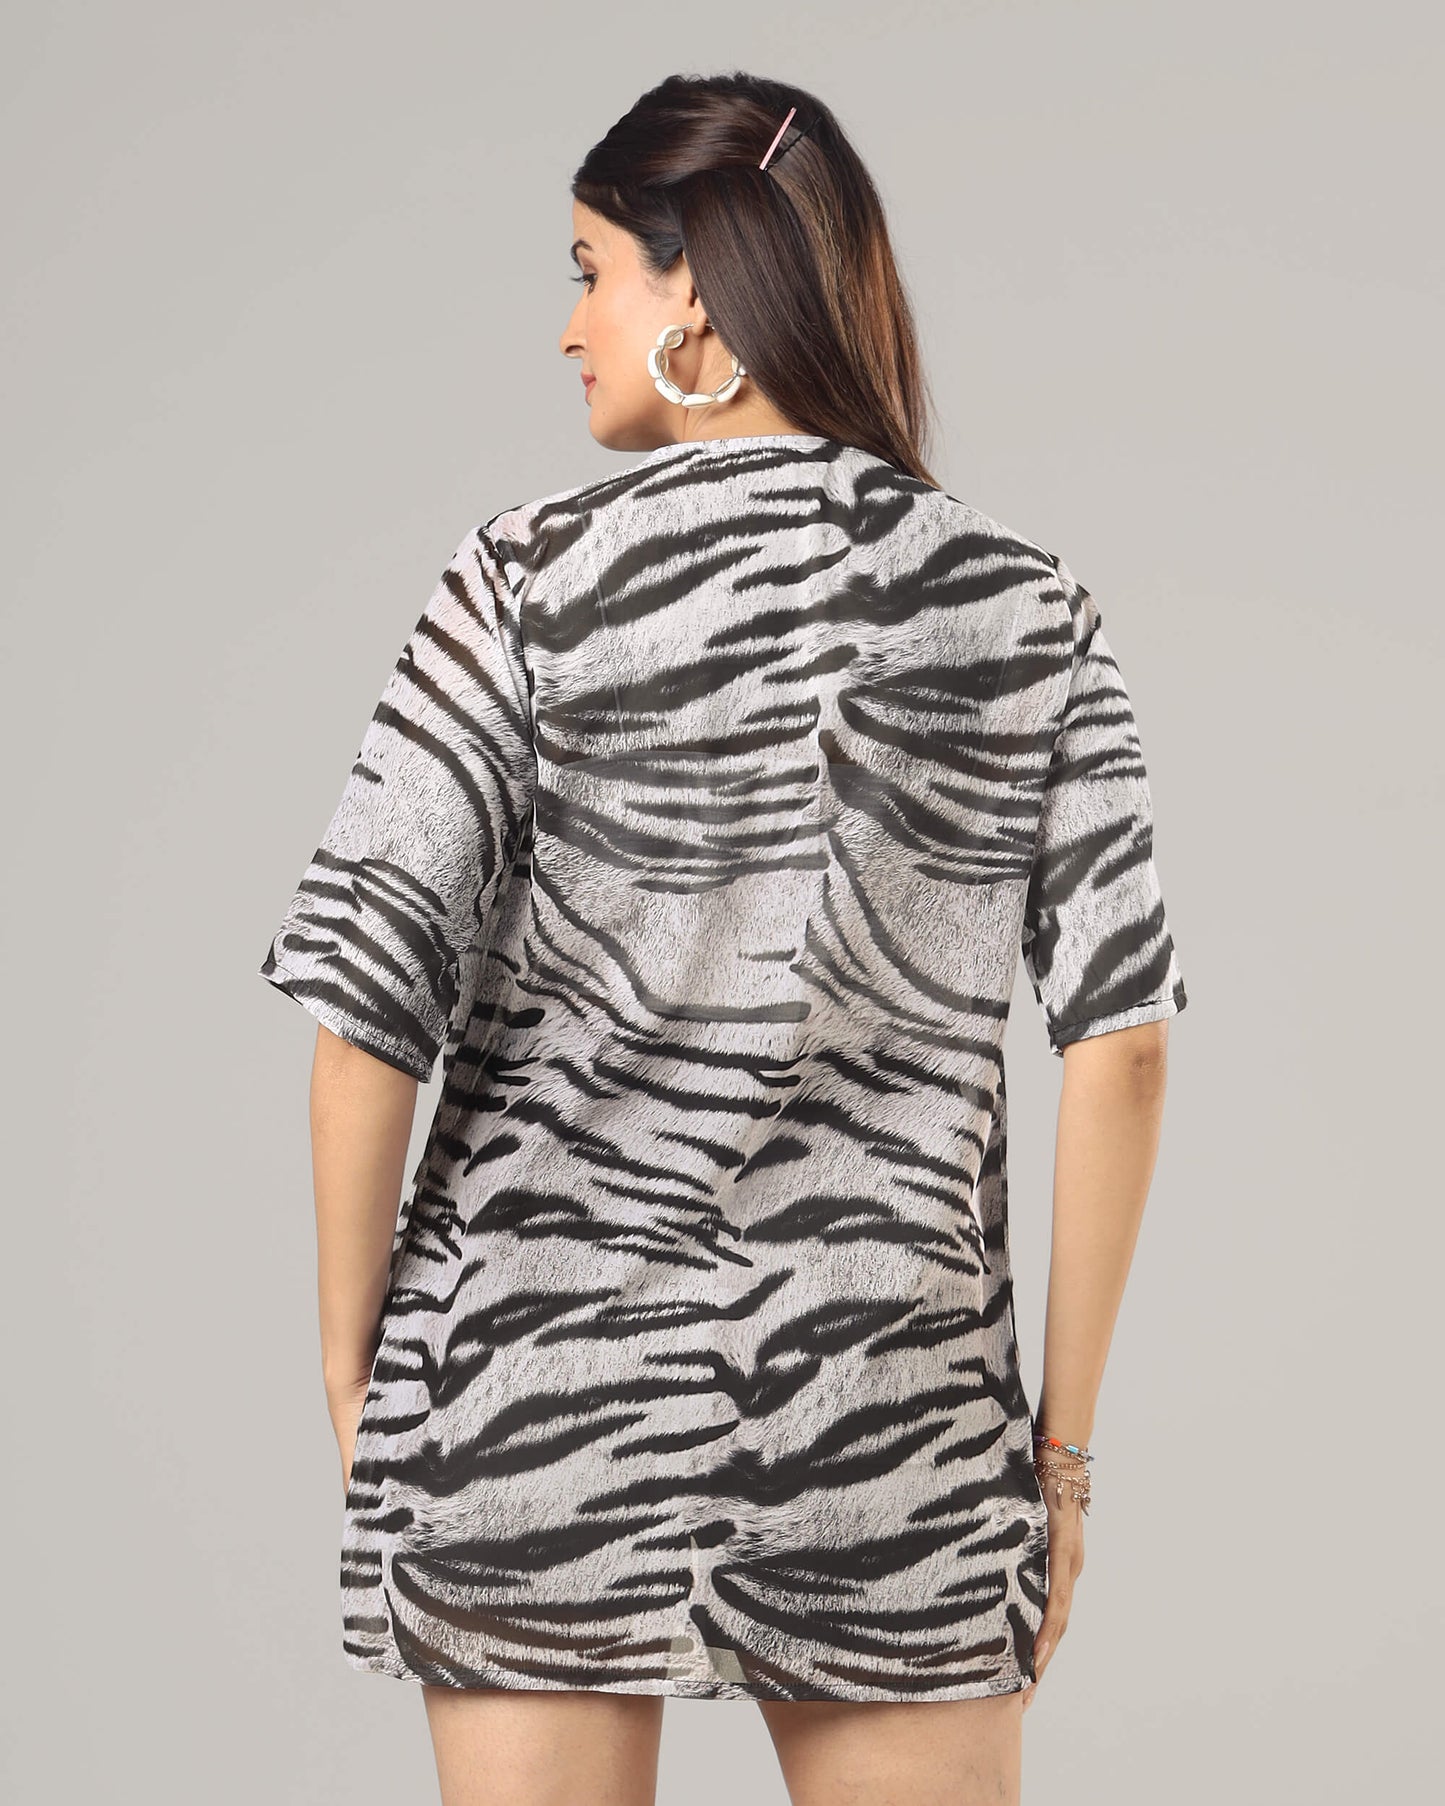 Trendy Animal Print Short Sleeve Shrug For Women